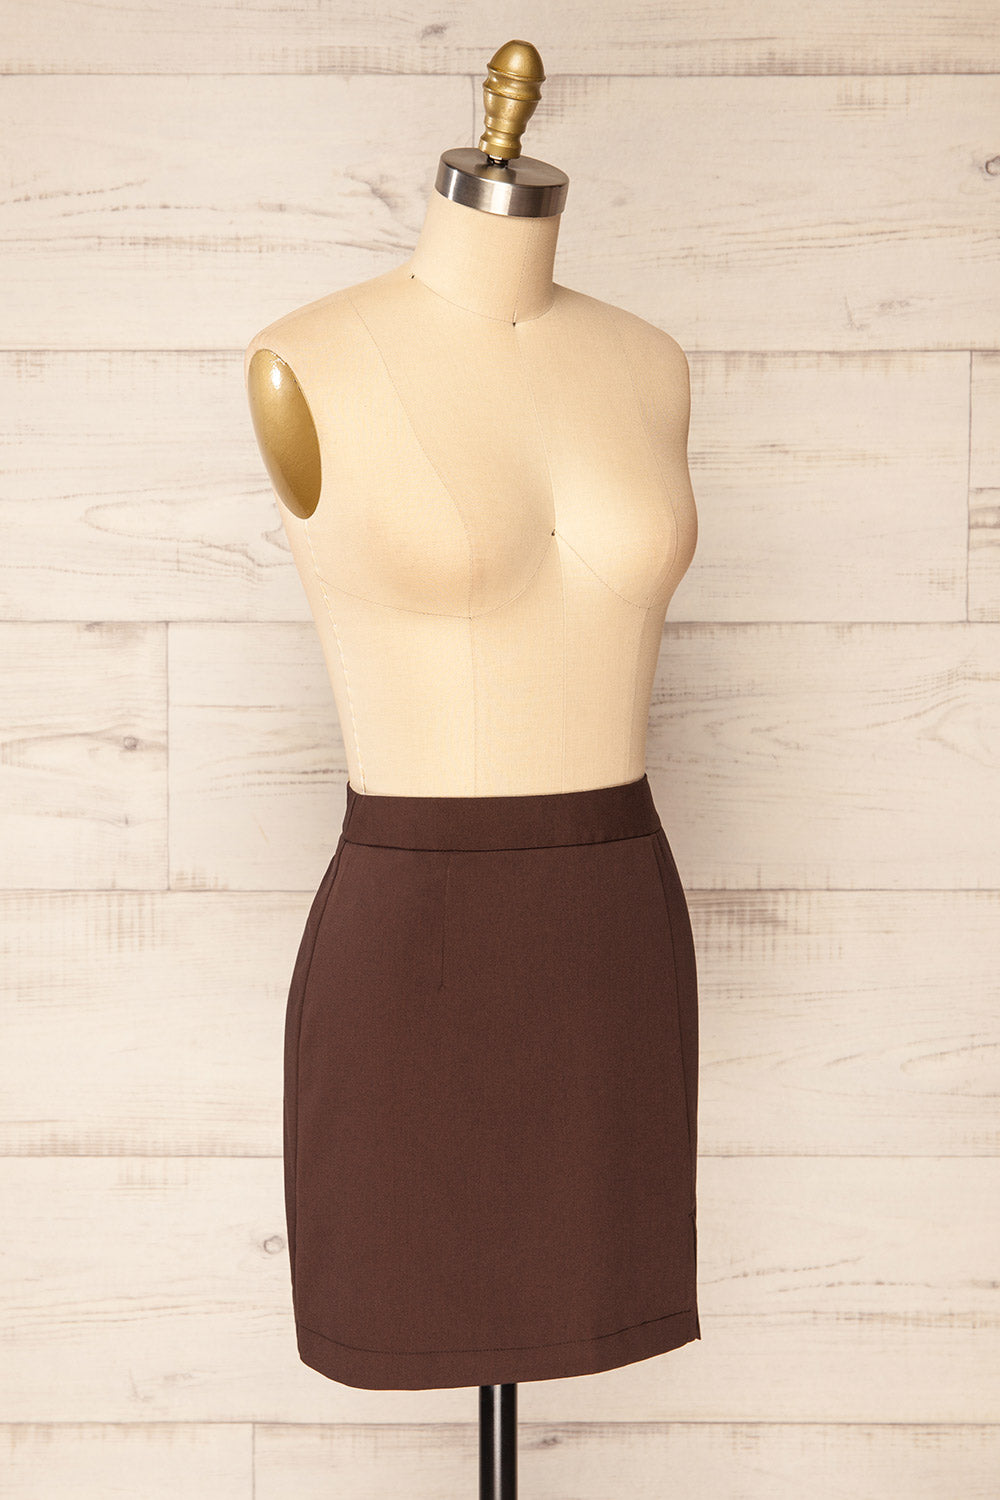 Rivas Brown Short Skirt with Slit | La petite garçonne side view 